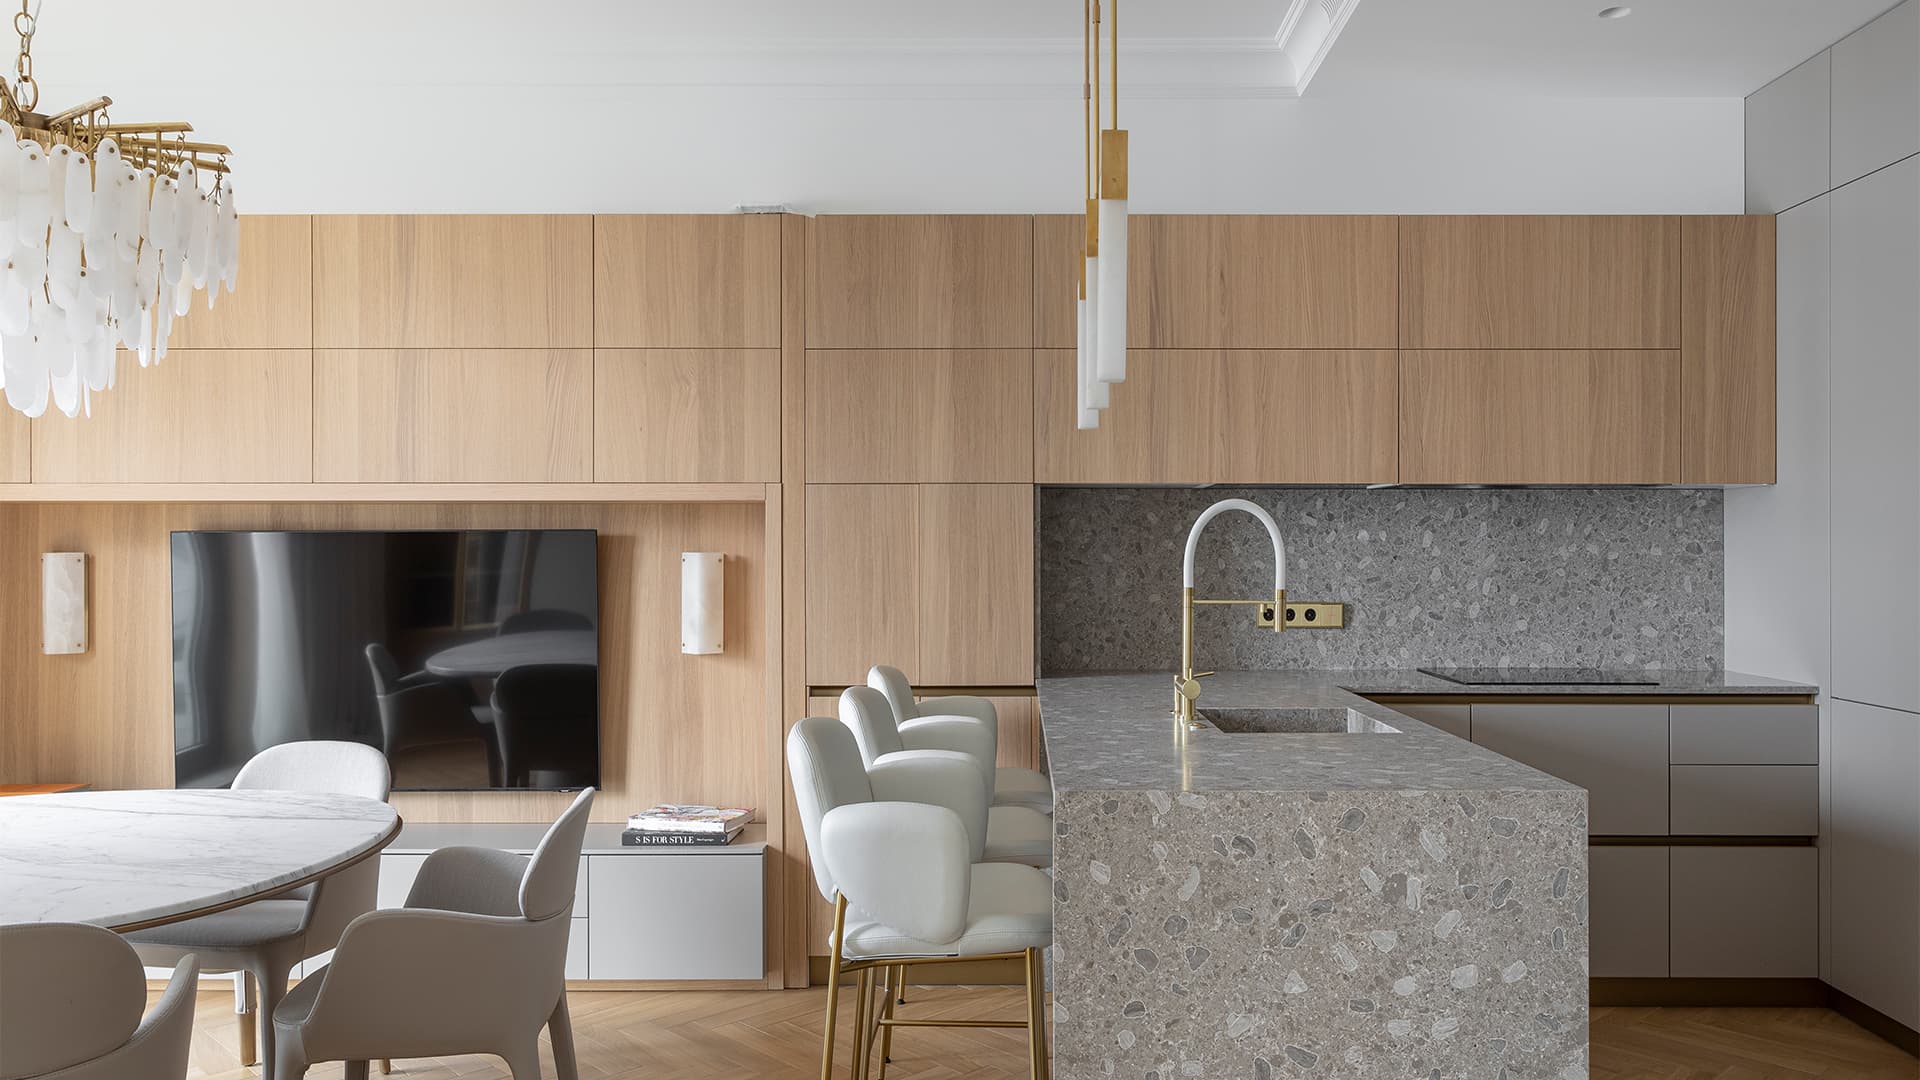 Легкий и светлый интерьер квартиры с двумя гардеробными – проект Александры Бурмистровой